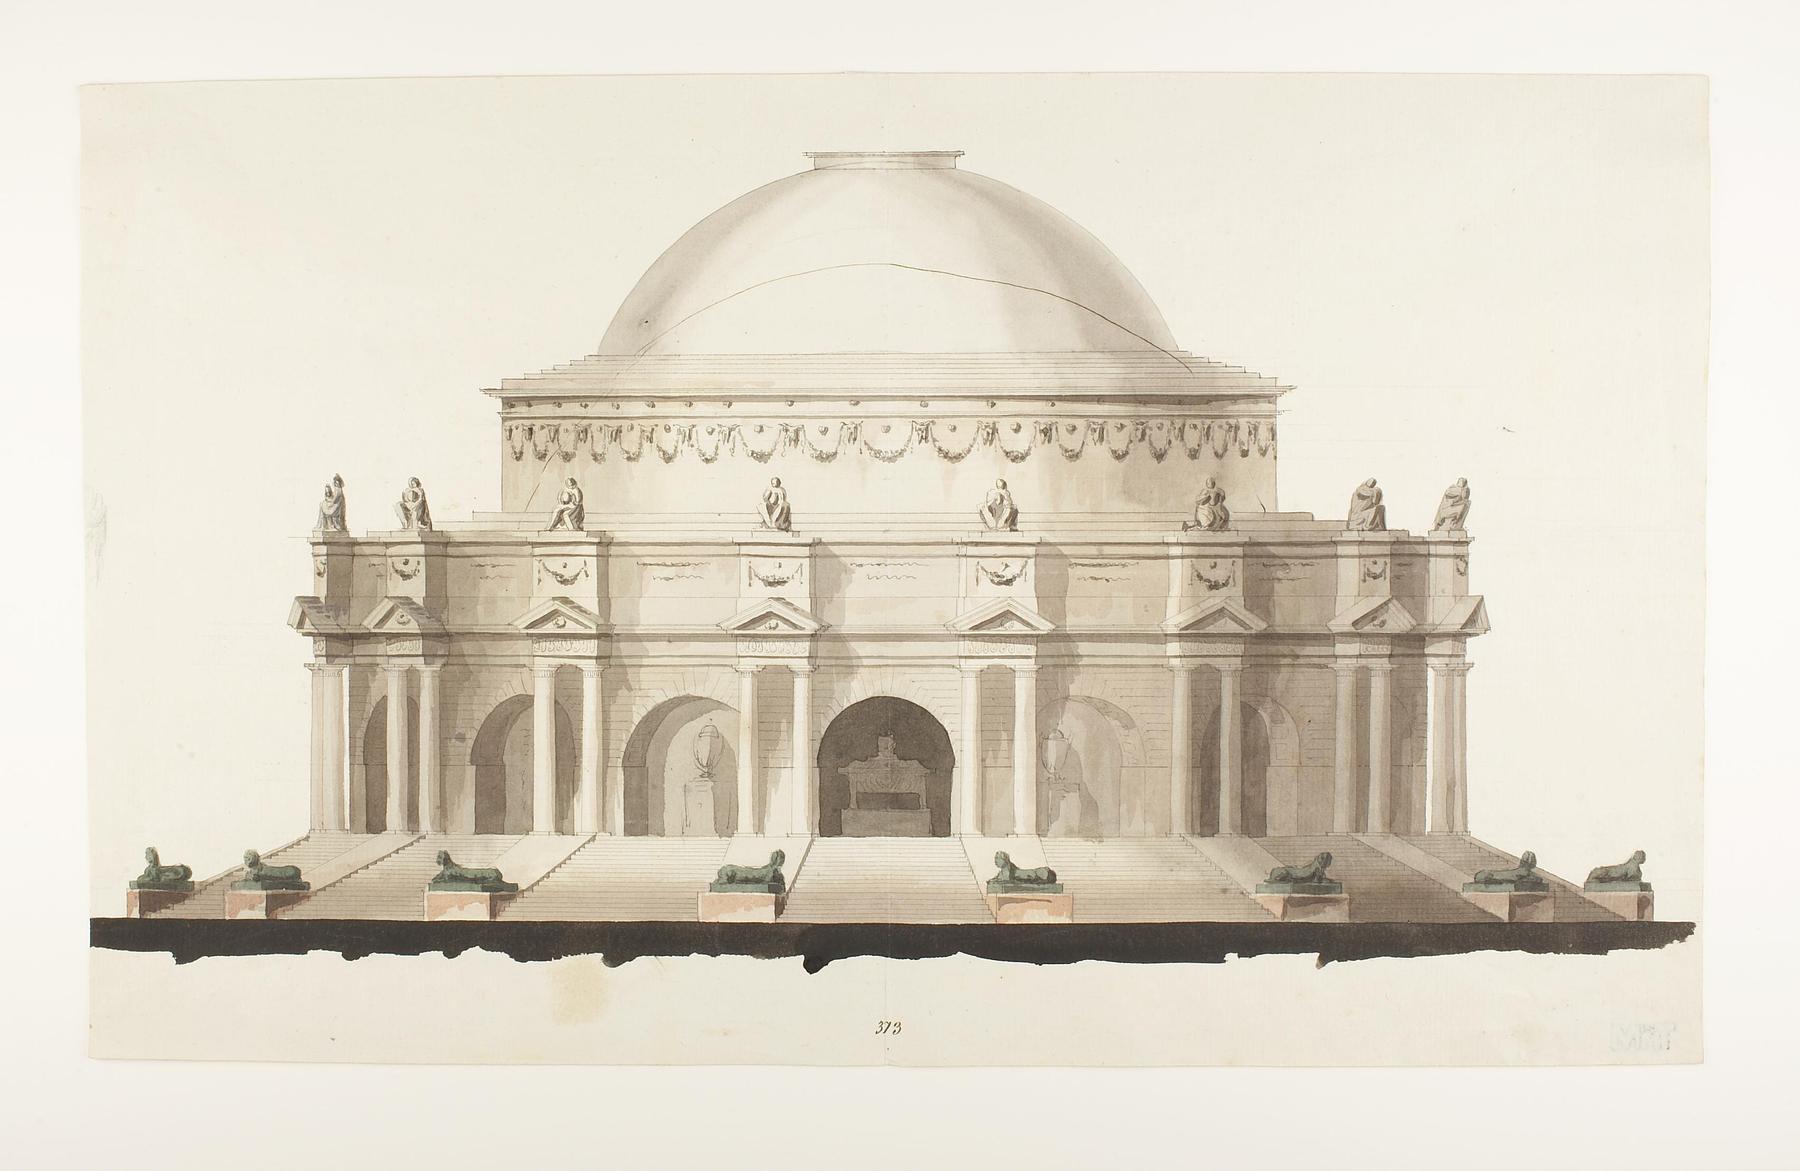 Udkast til et mausoleum eller gravkapel i antik stil, opstalt af facade, D861